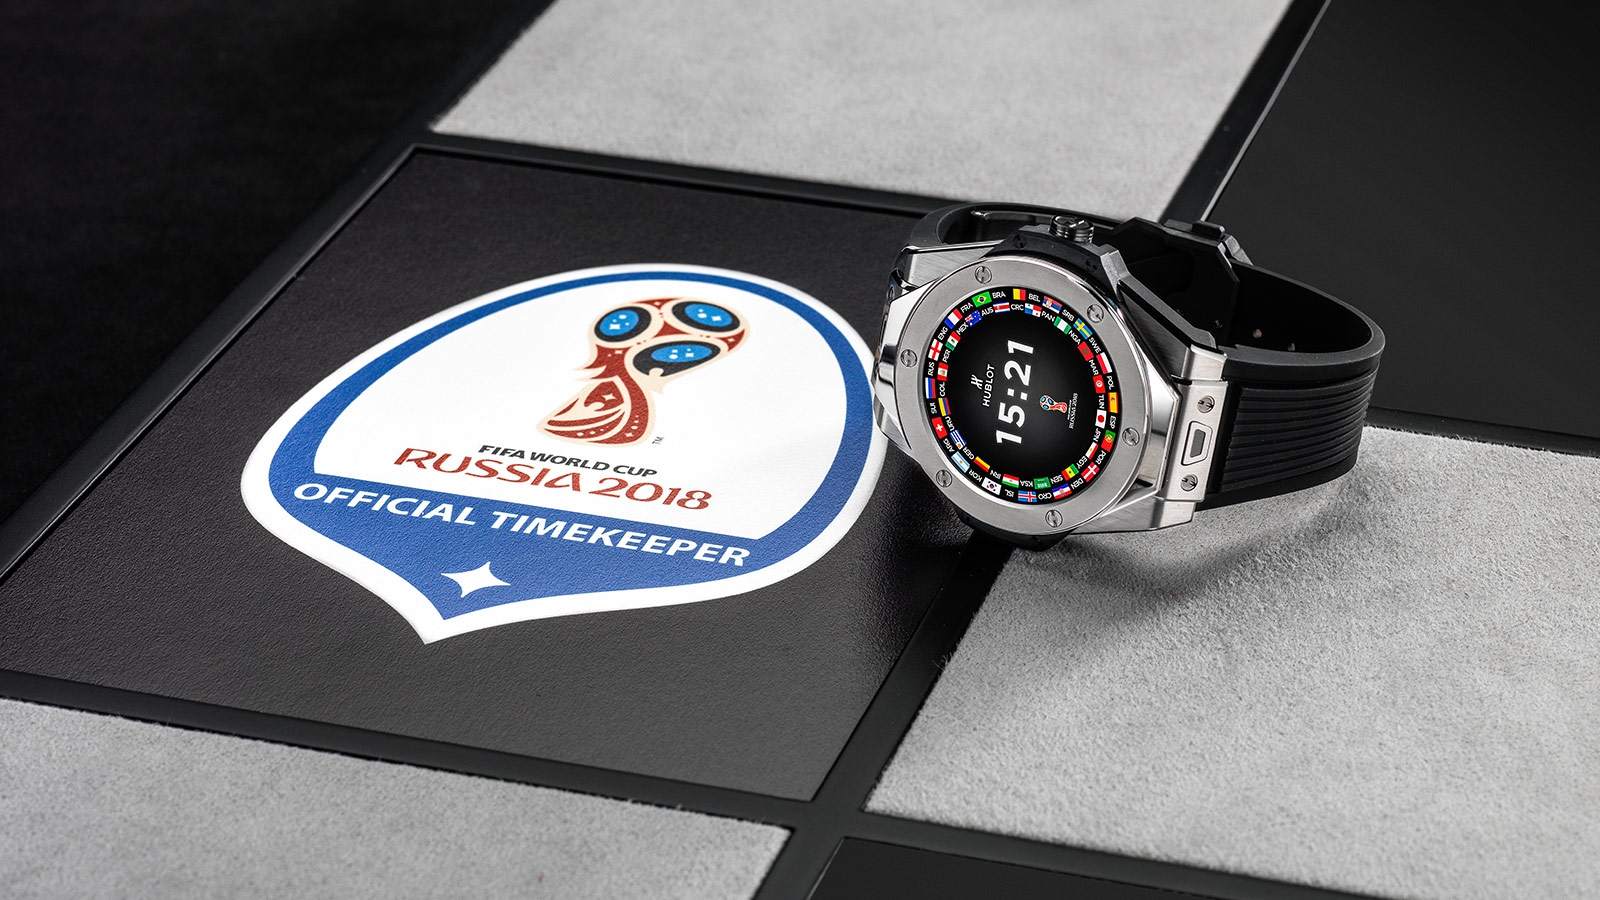 Hubolt เปิดตัวนาฬิกาสมาร์ทวอทช์ Wear OS สำหรับผู้ตัดสินใน FIFA World Cup 2018 และจะจำหน่ายเพียง 2,018 เรือนเท่านั้น!!